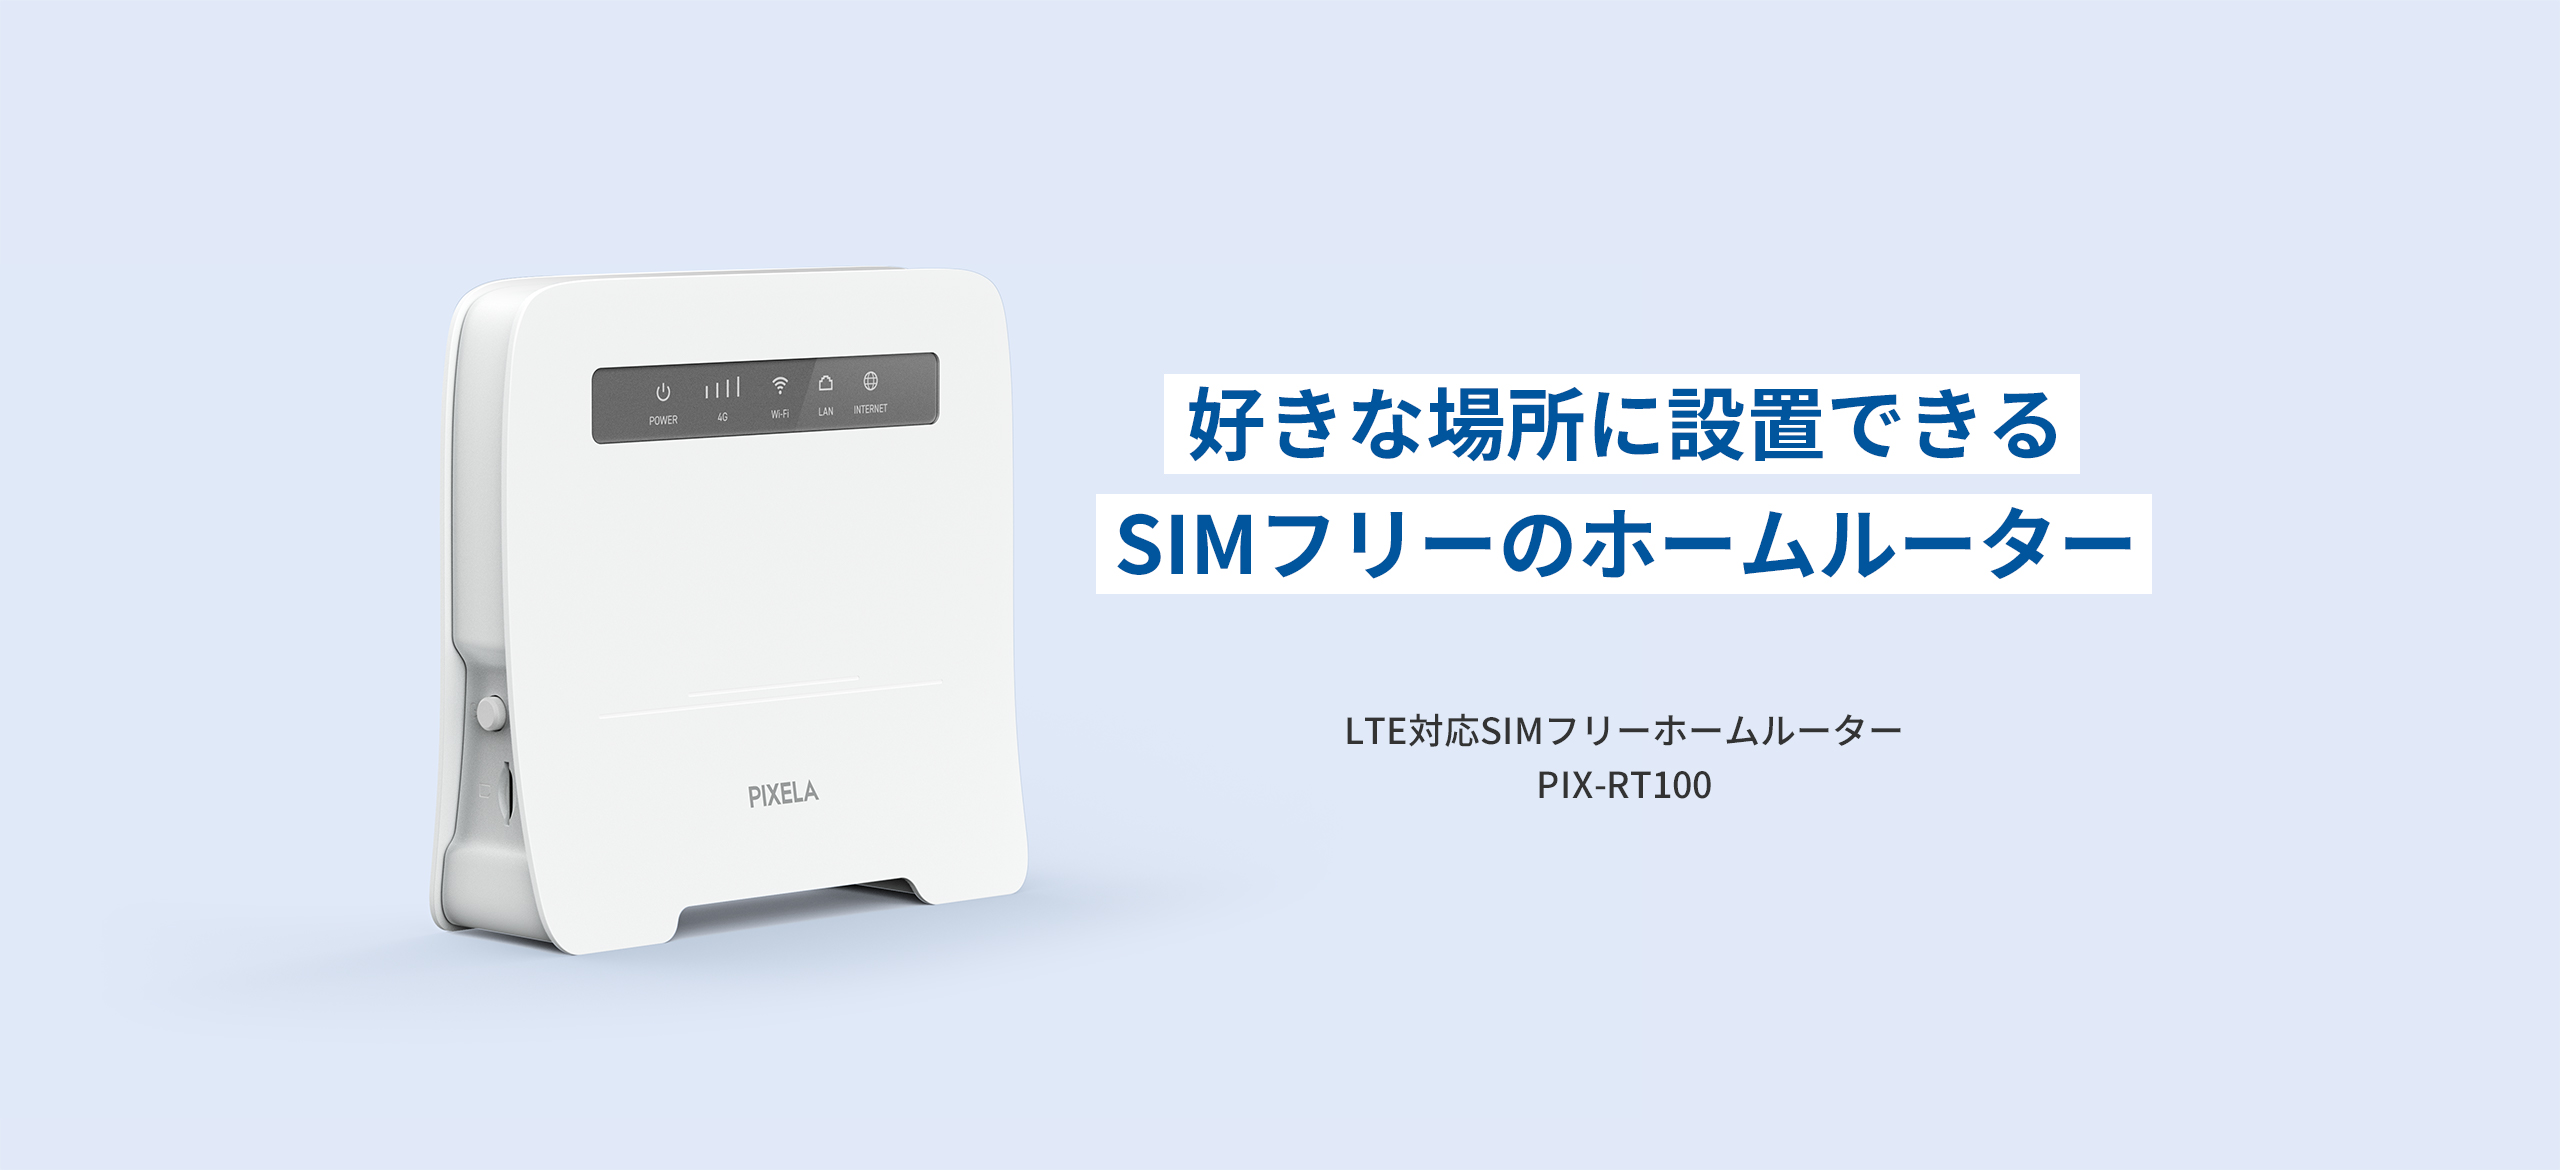 好きな場所に設置できるSIMフリーのホームルーター LTE対応SIMフリーホームルーター PIX-RT100